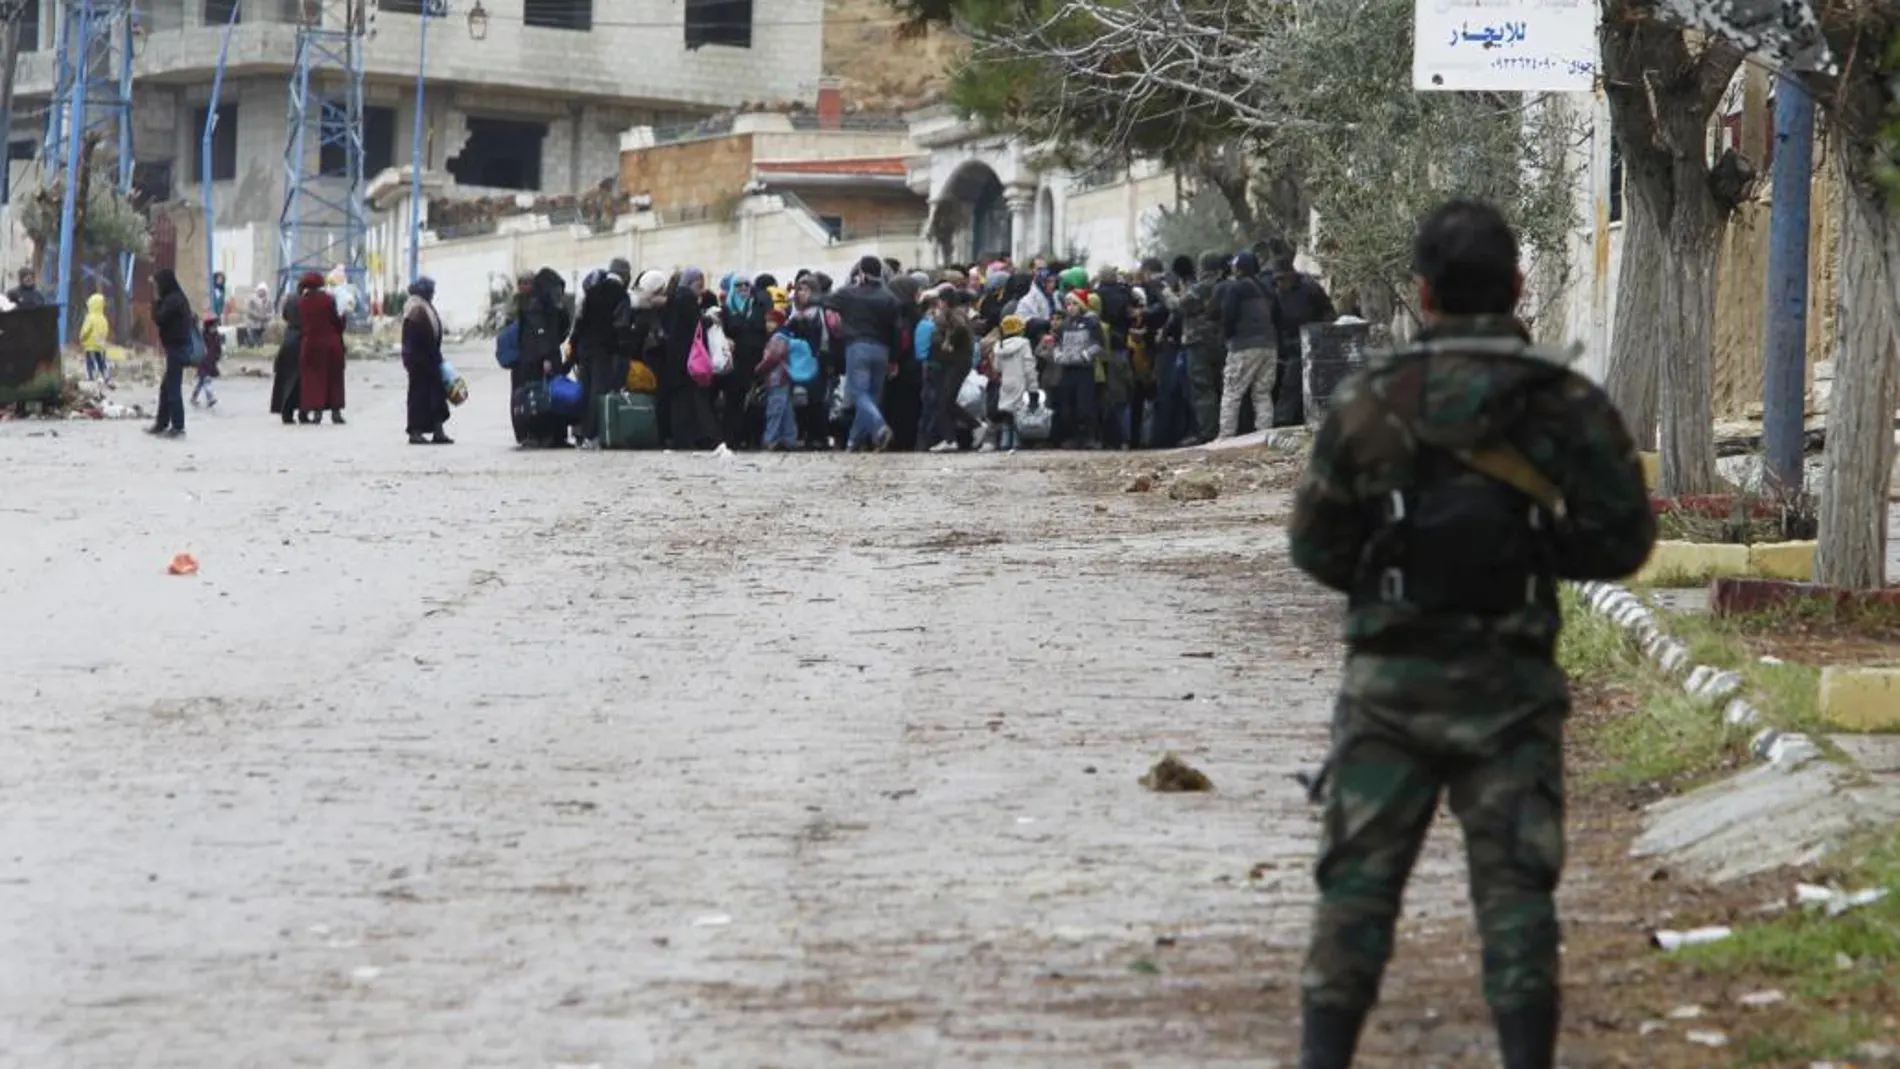 Soldados del ejército sirio vigilan a los residente autorizados a acudir a la zona de espera para recibir la ayuda humanitaria